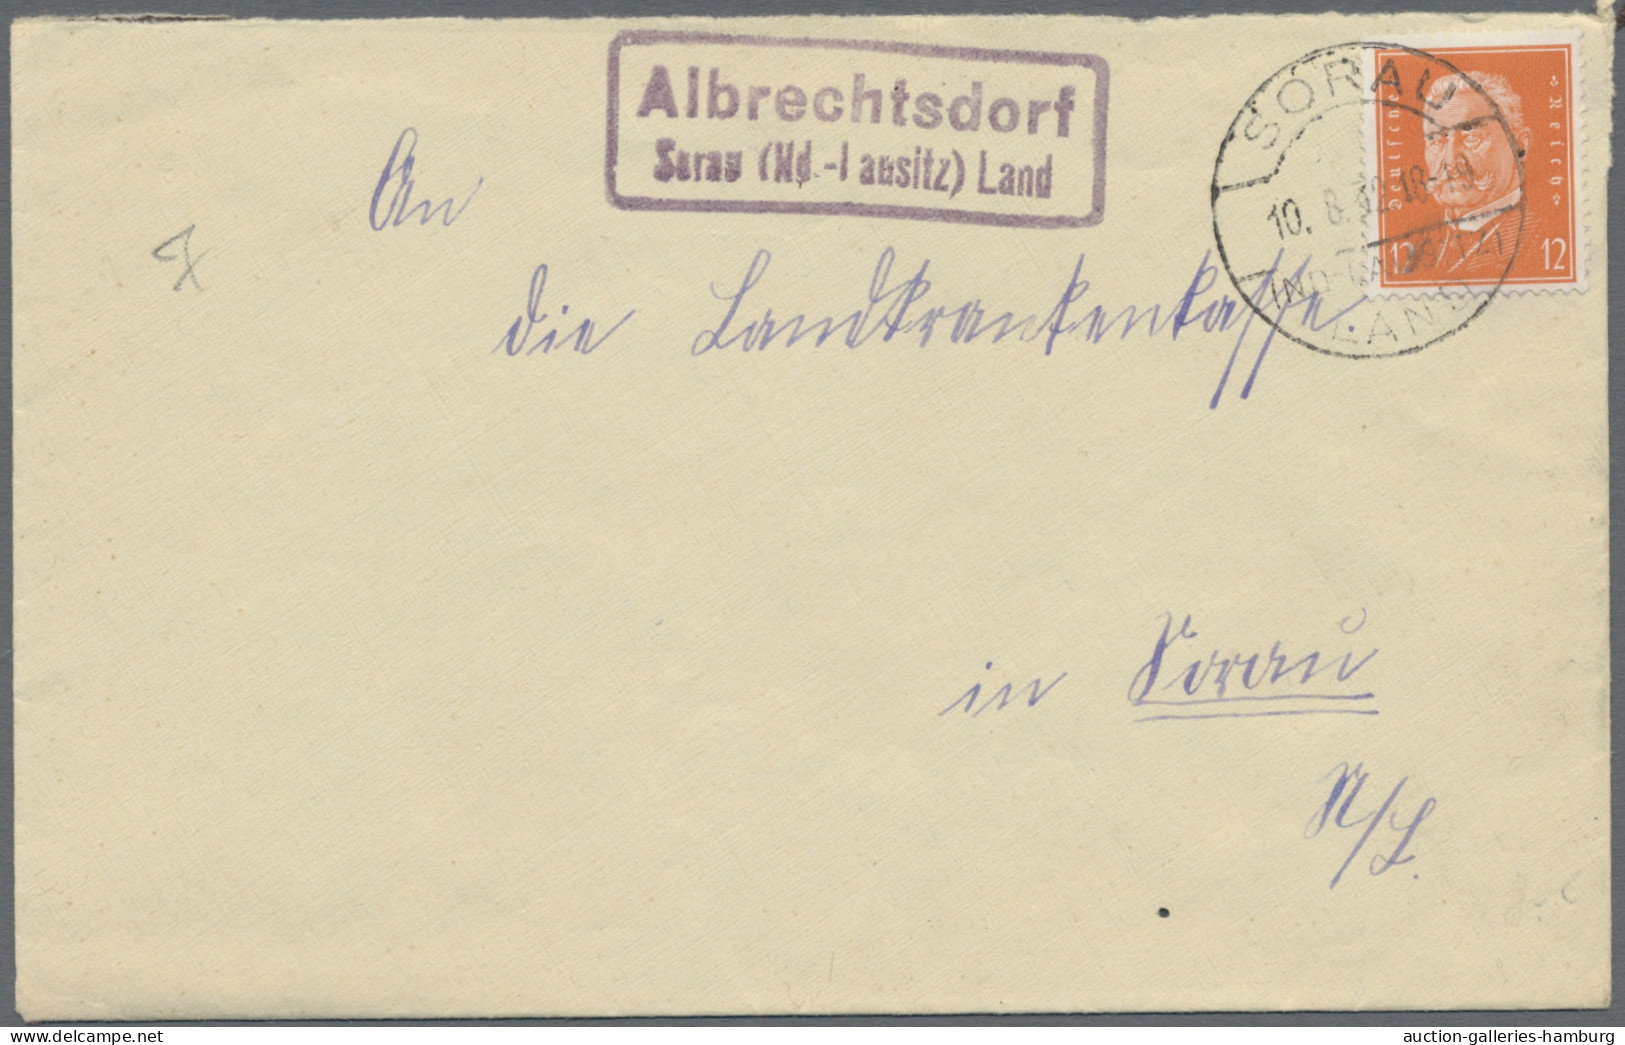 Deutsches Reich: 1880-1944 (ca.), Partie von etwa 250 Belegen mit u.a. Ansichtsk